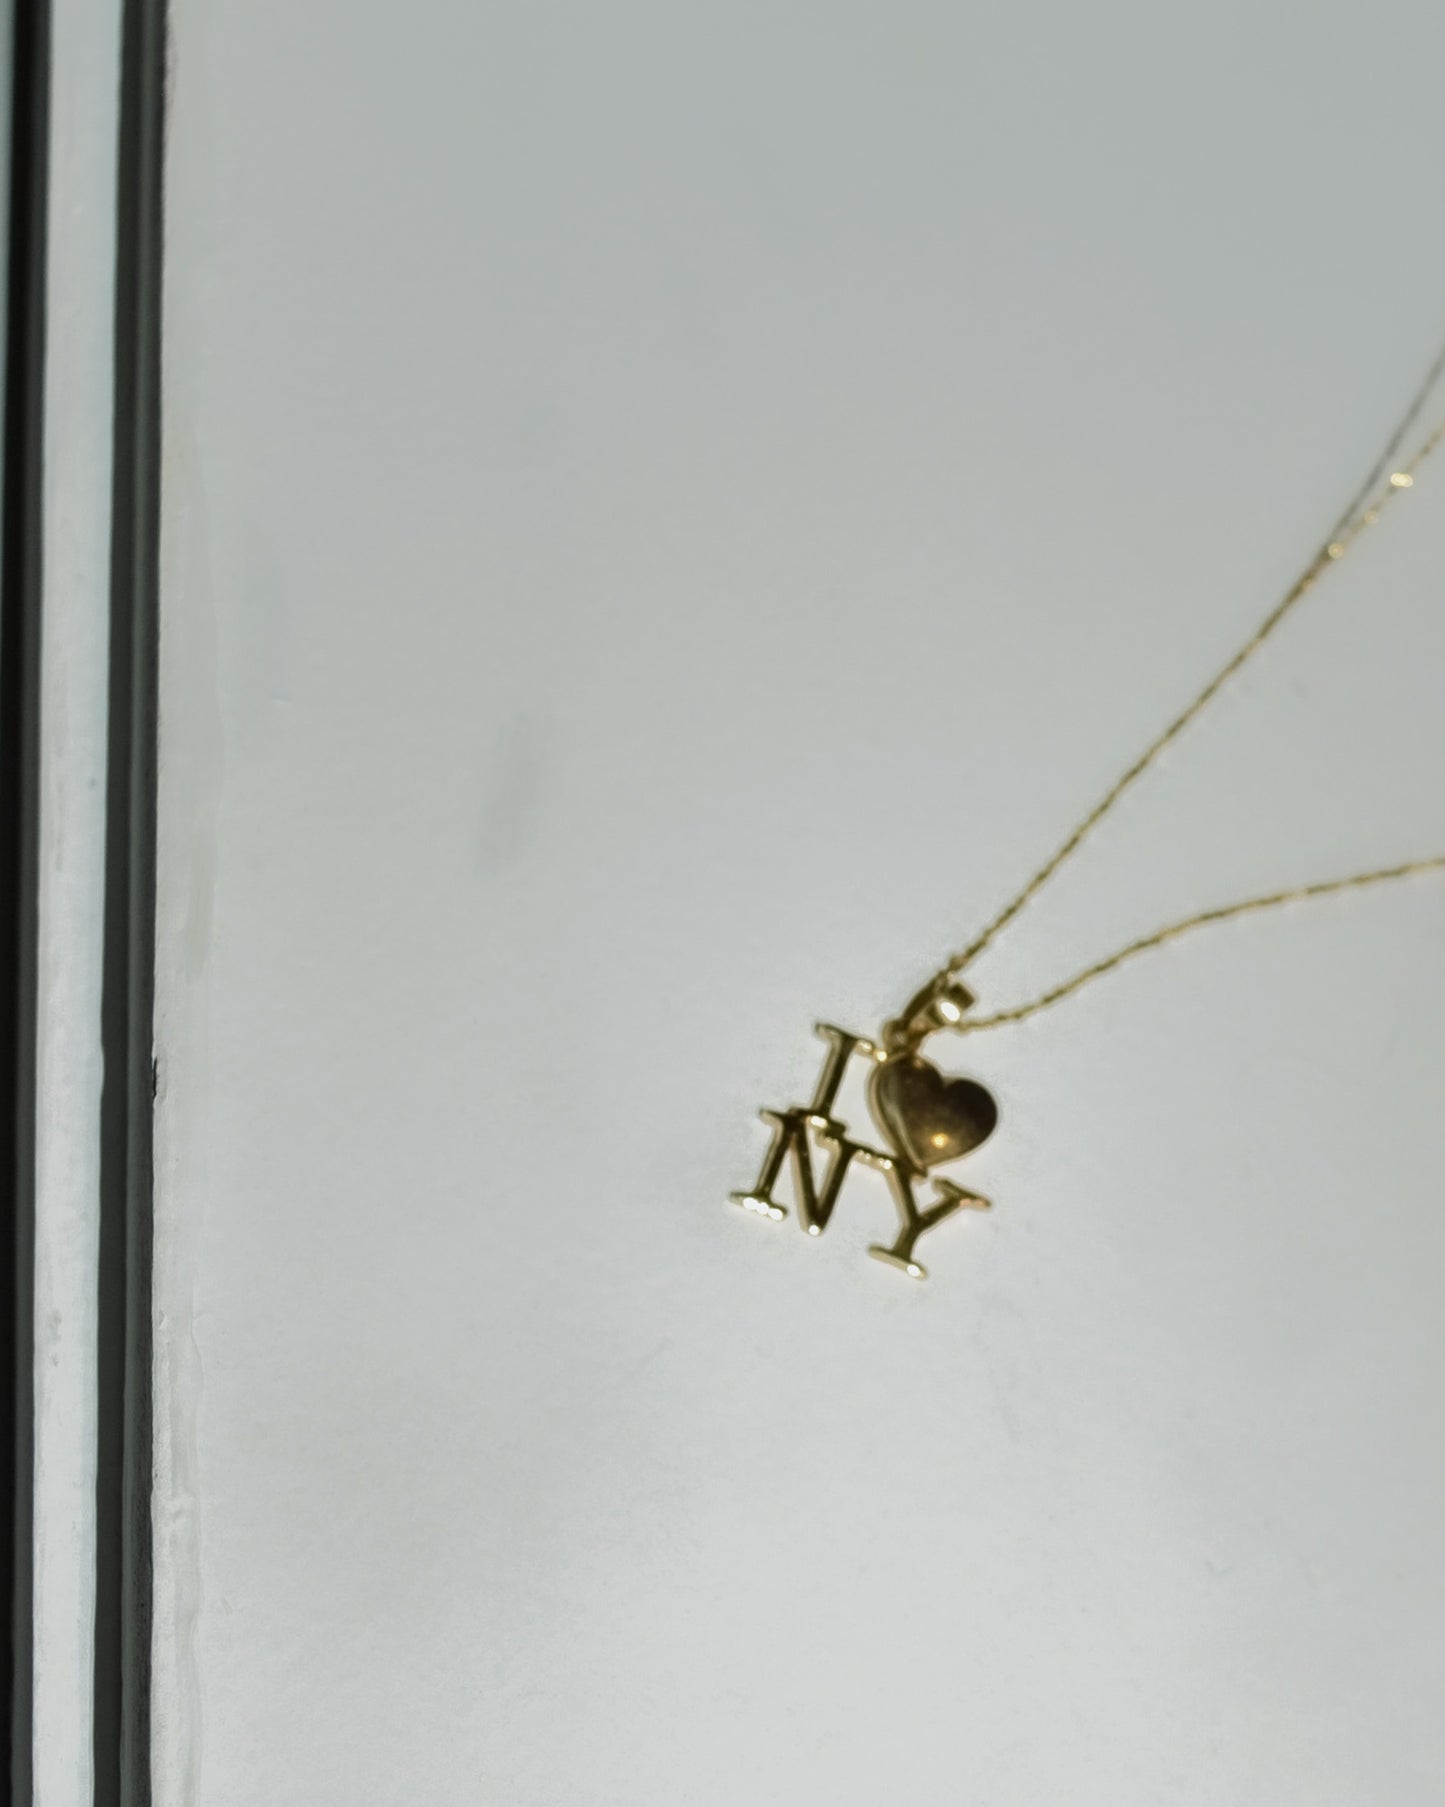 14k Gold Necklace -I LOVE NY-